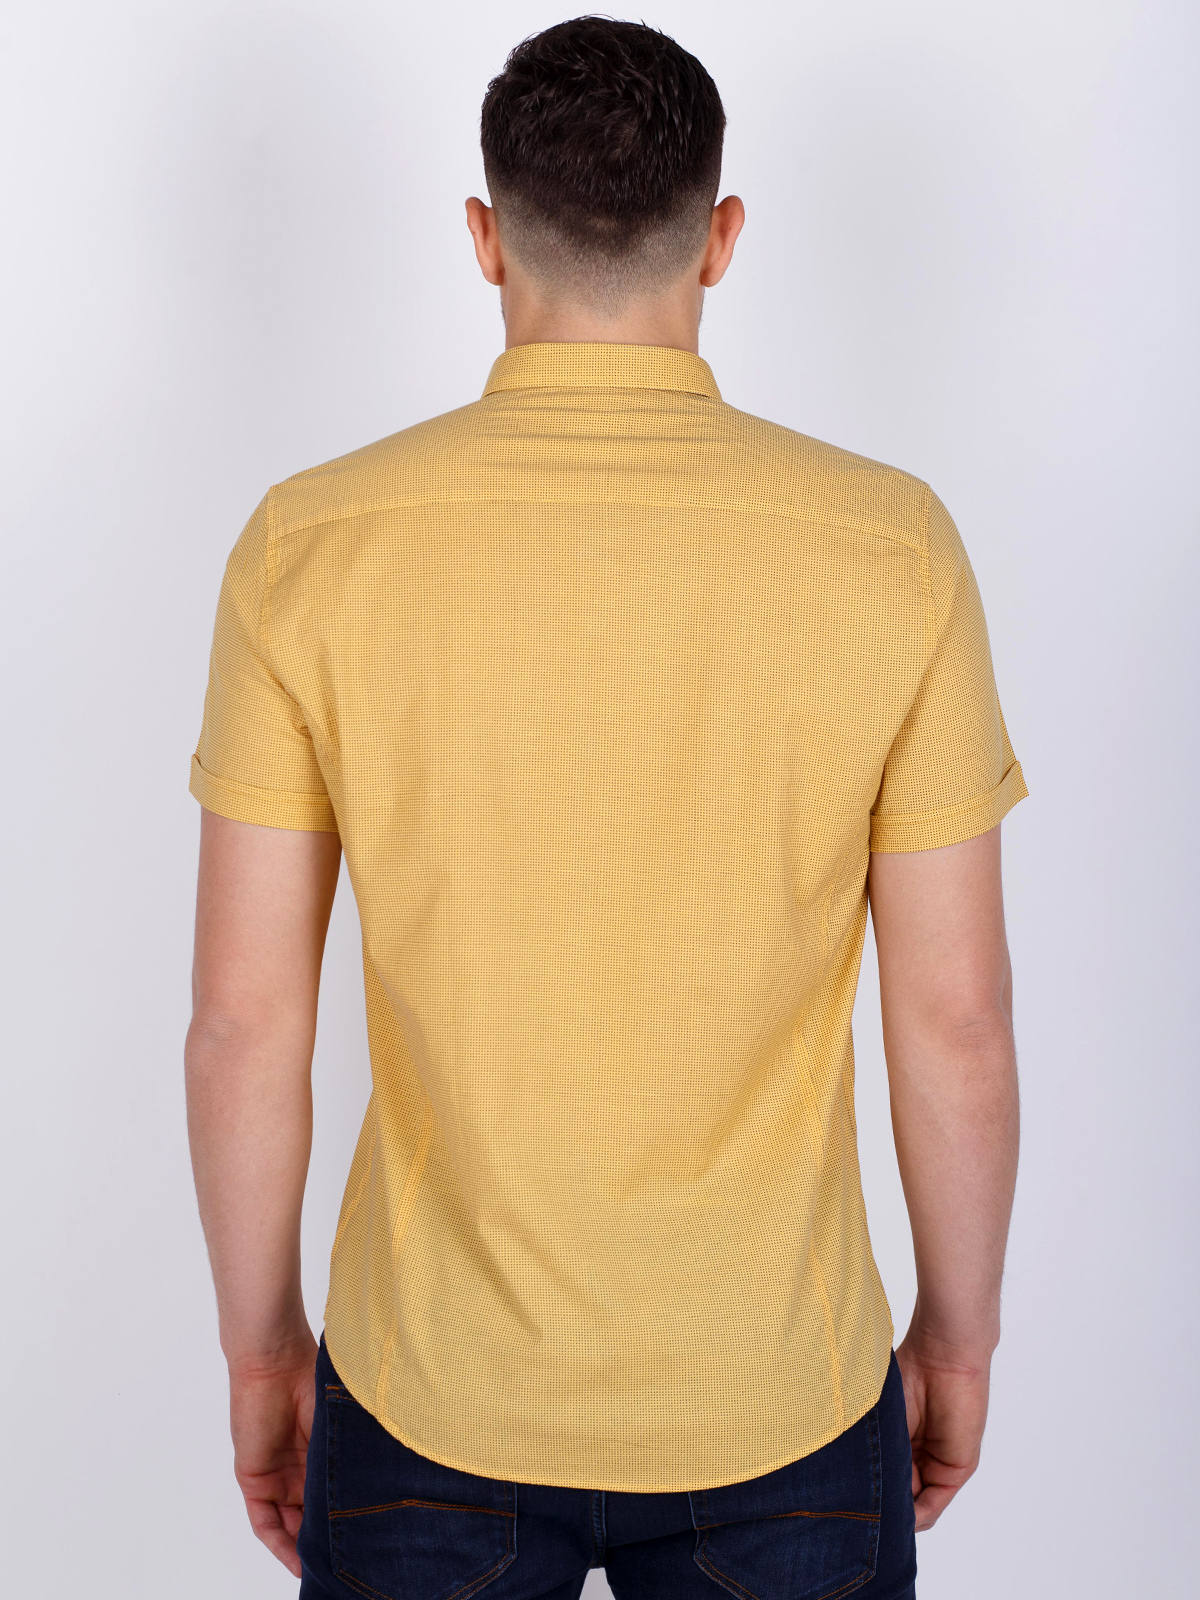 Жълта вталена риза със ситен принт - 80221 39.00 лв img4